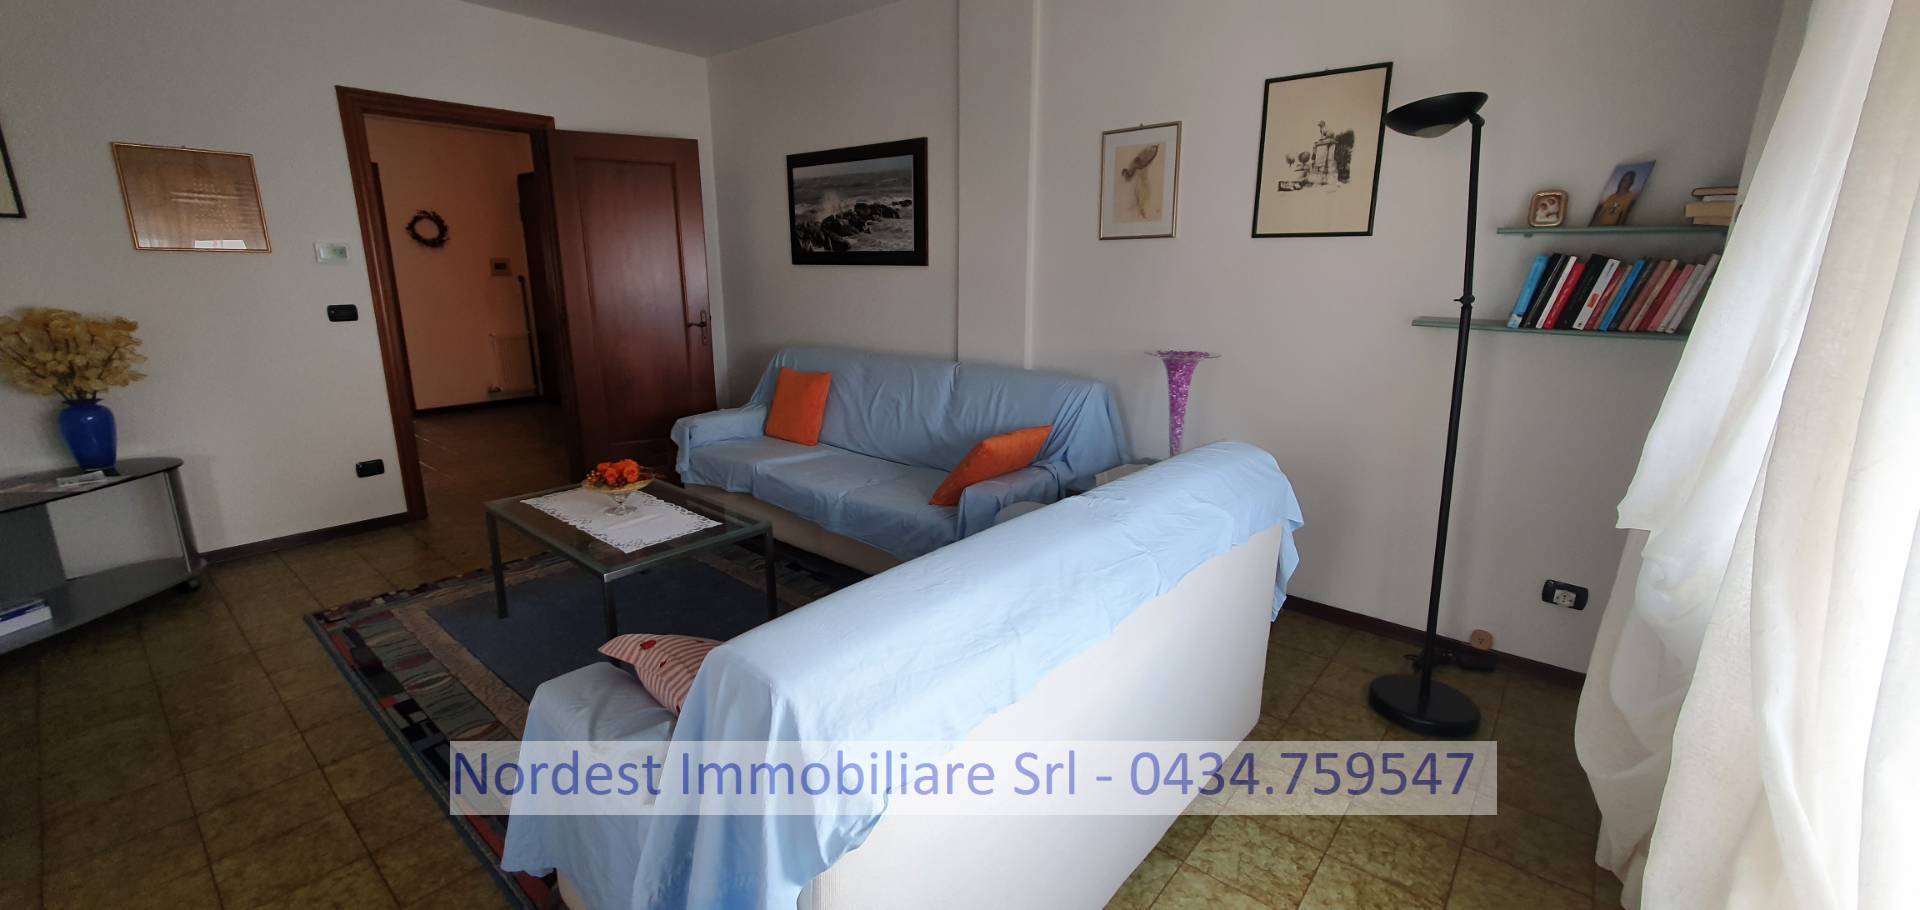 Appartamento in affitto a Gaiarine, 9999 locali, prezzo € 625 | CambioCasa.it